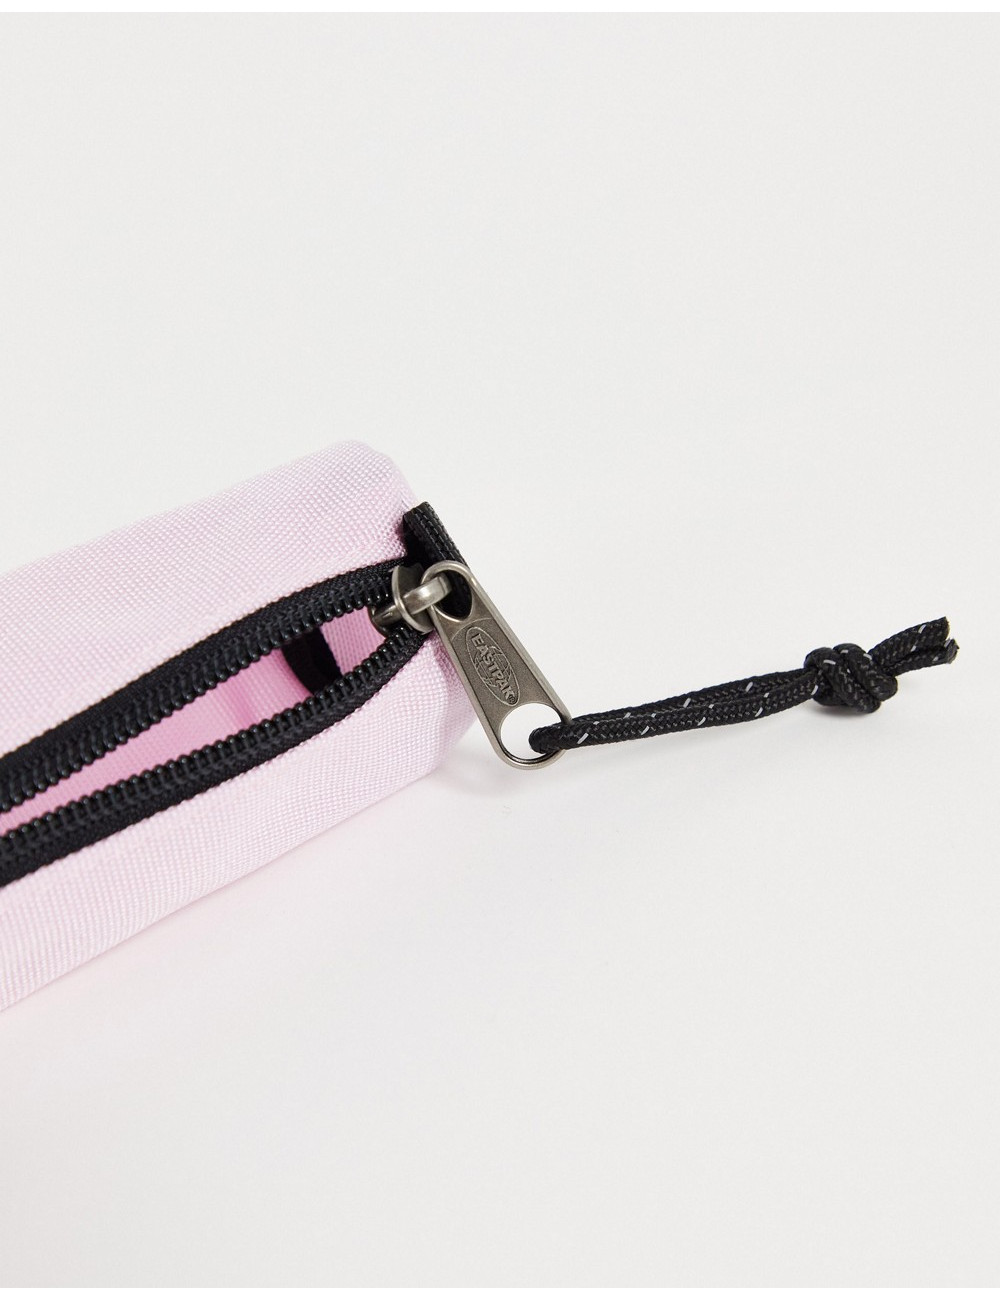 Eastpak pen pouch in pink